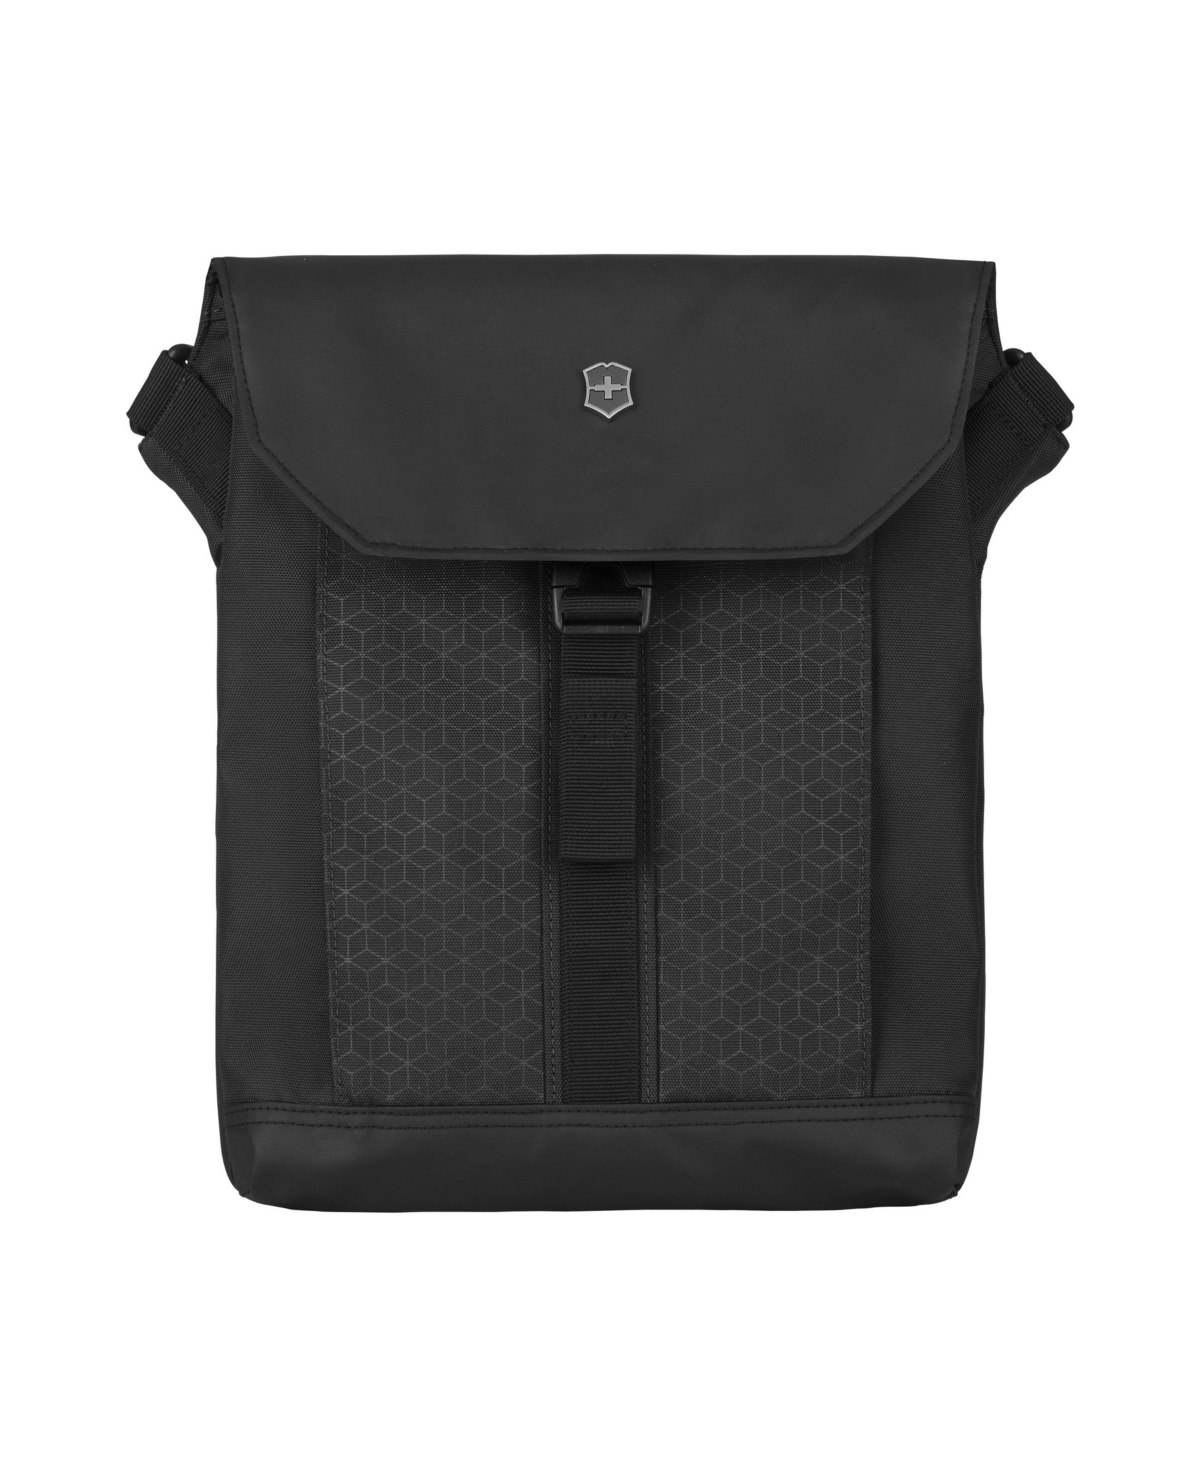 Altmont Original Flaptop Digital Bag - Black